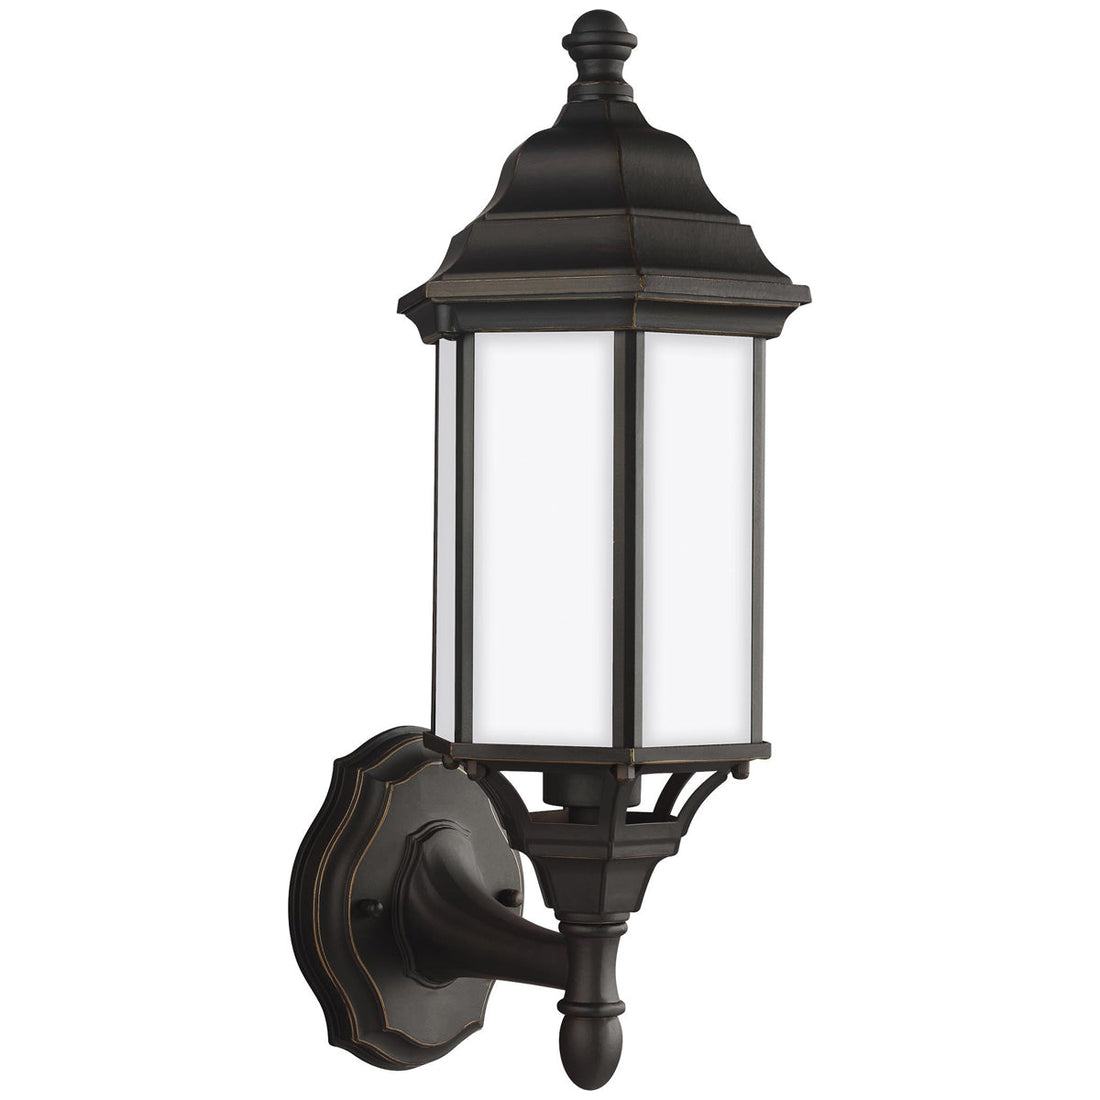 Sea Gull Lighting Sevier 1-Light Uplight Outdoor Wall Lantern